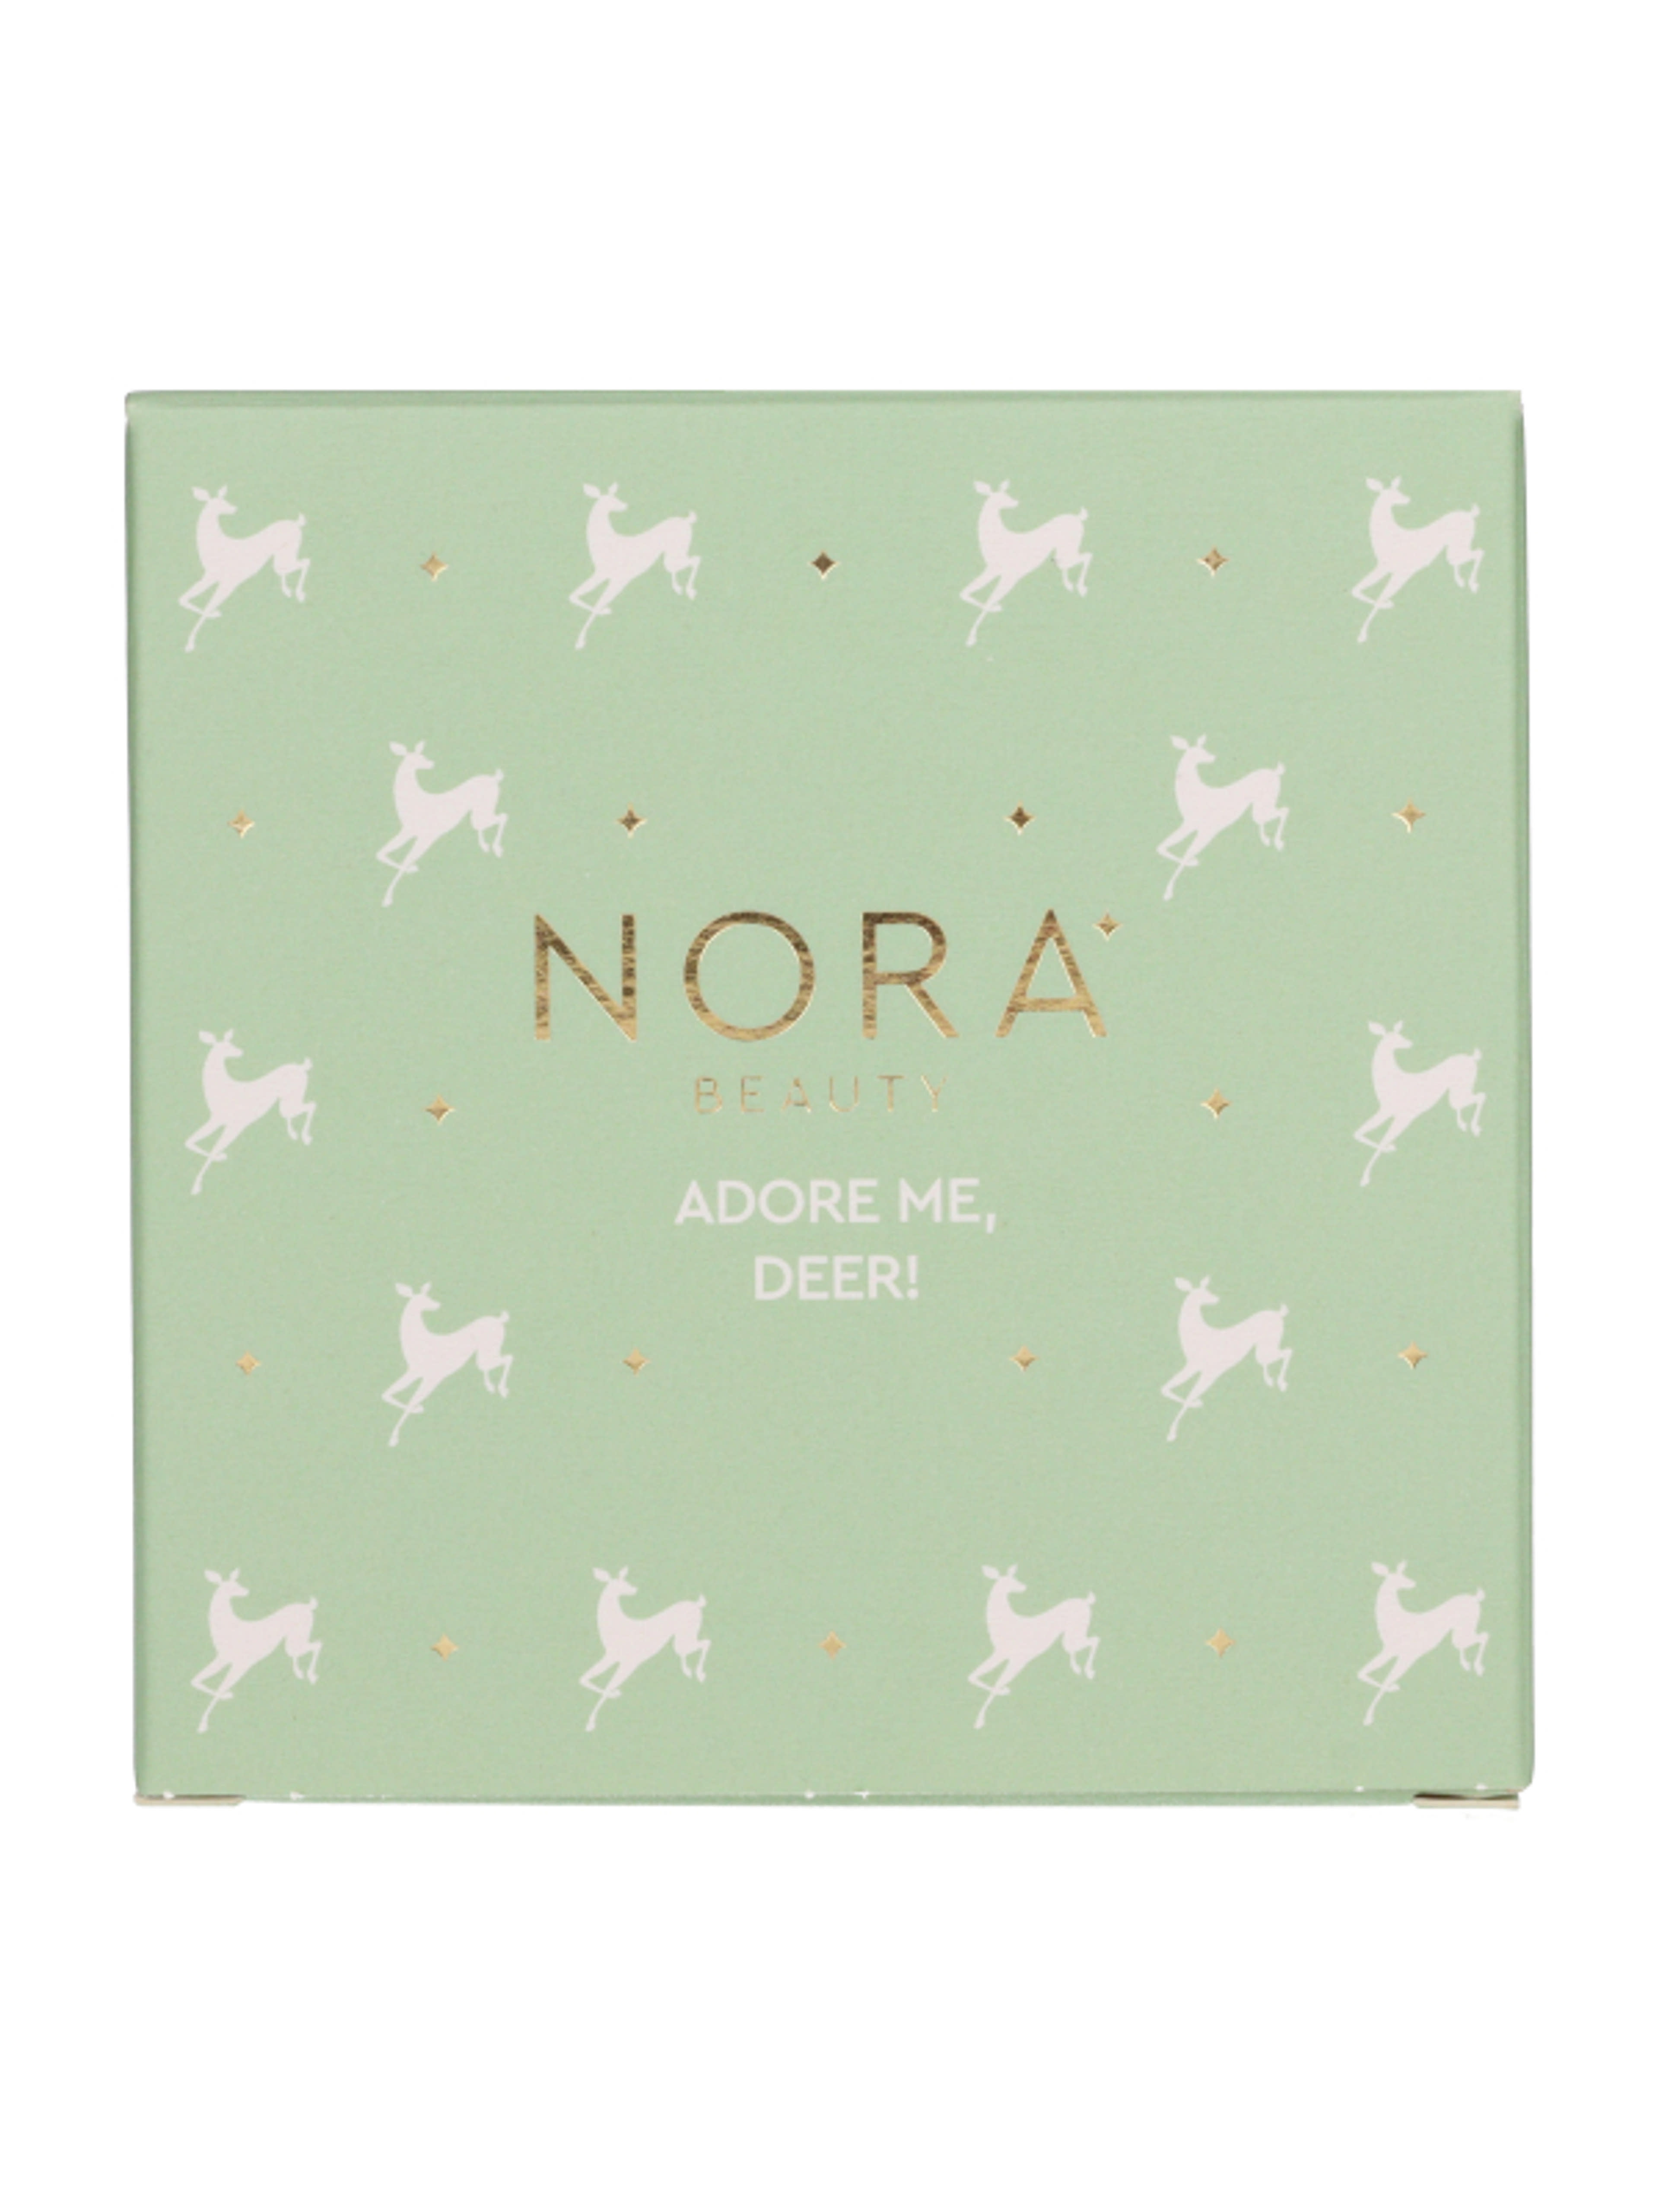 Nora Beauty szemhéjpúder plaetta/01 hideg színárnyalatok - 1 db